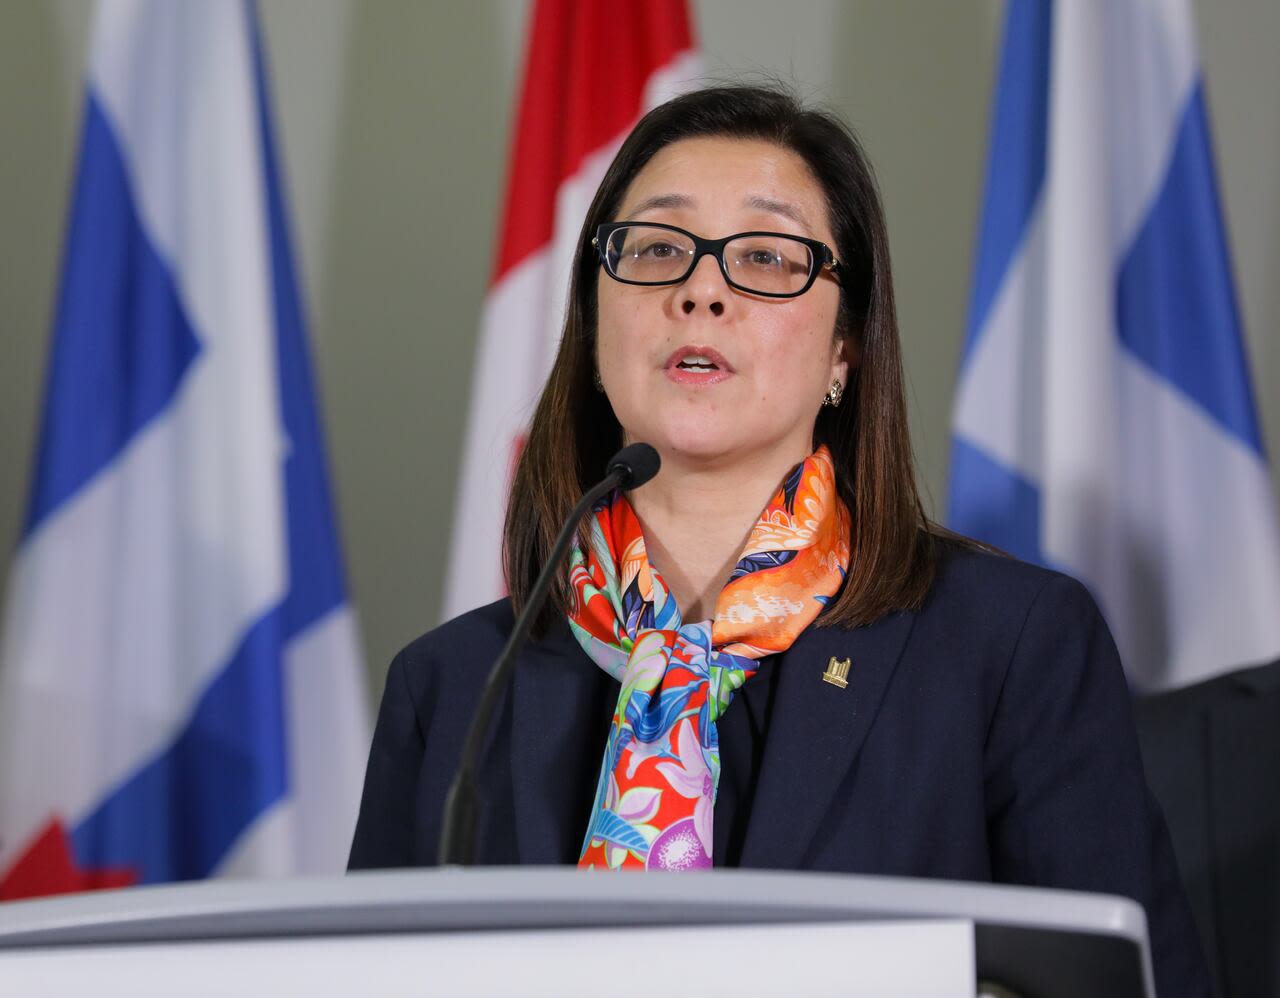 Toronto's top doctor Dr. Eileen de Villa announces resignation